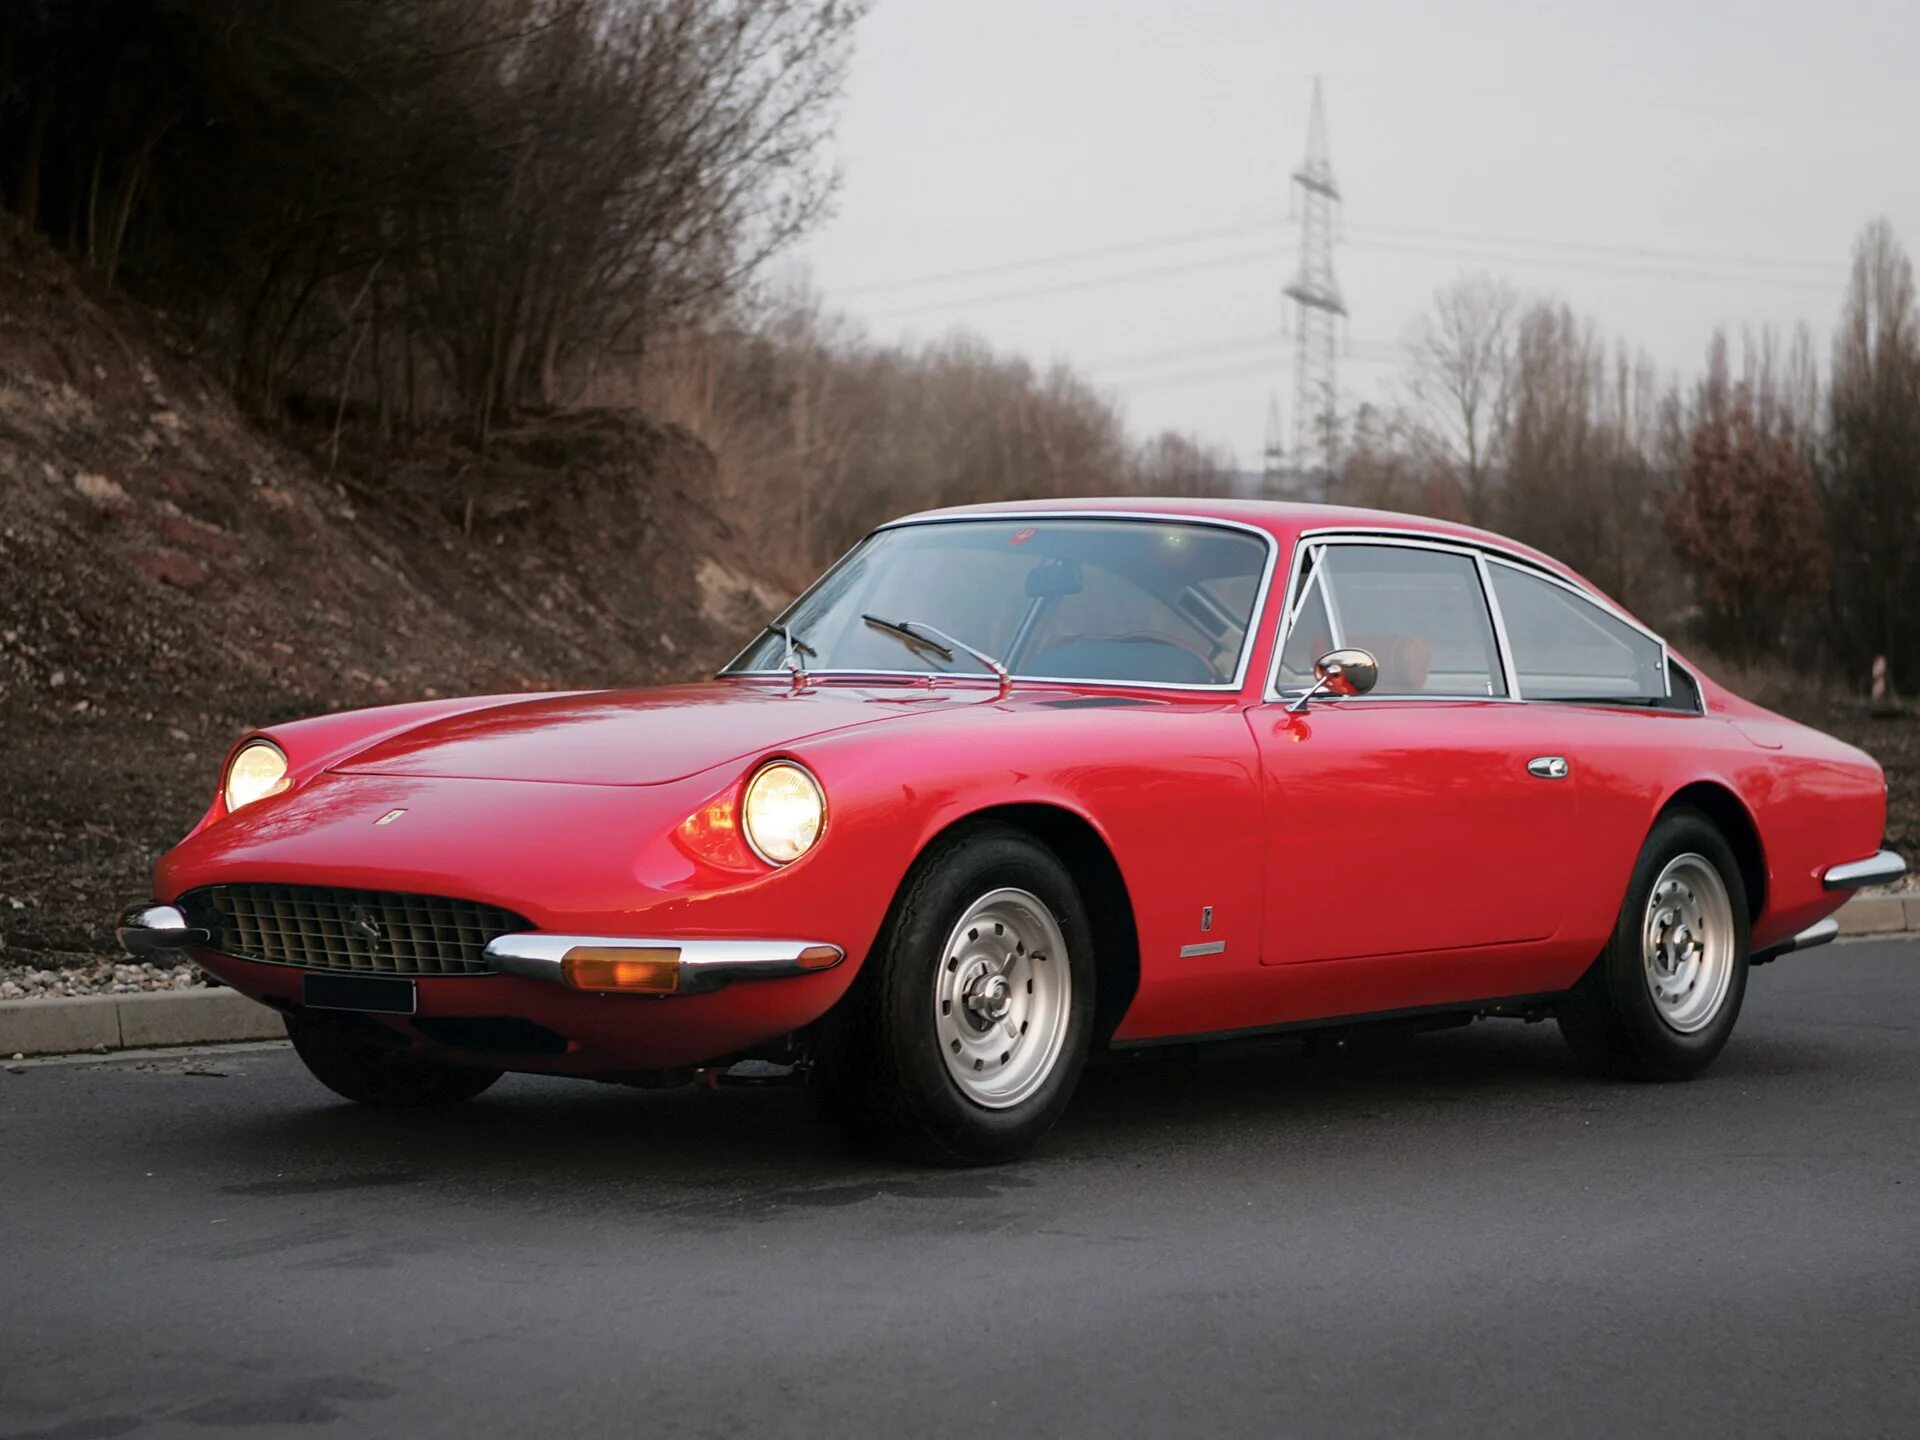 Ferrari 365. Ferrari 365 gt 2+2. Ferrari 365 gt. Ferrari 365 gt 2+2 (1967). 1968 Ferrari 365 gt.